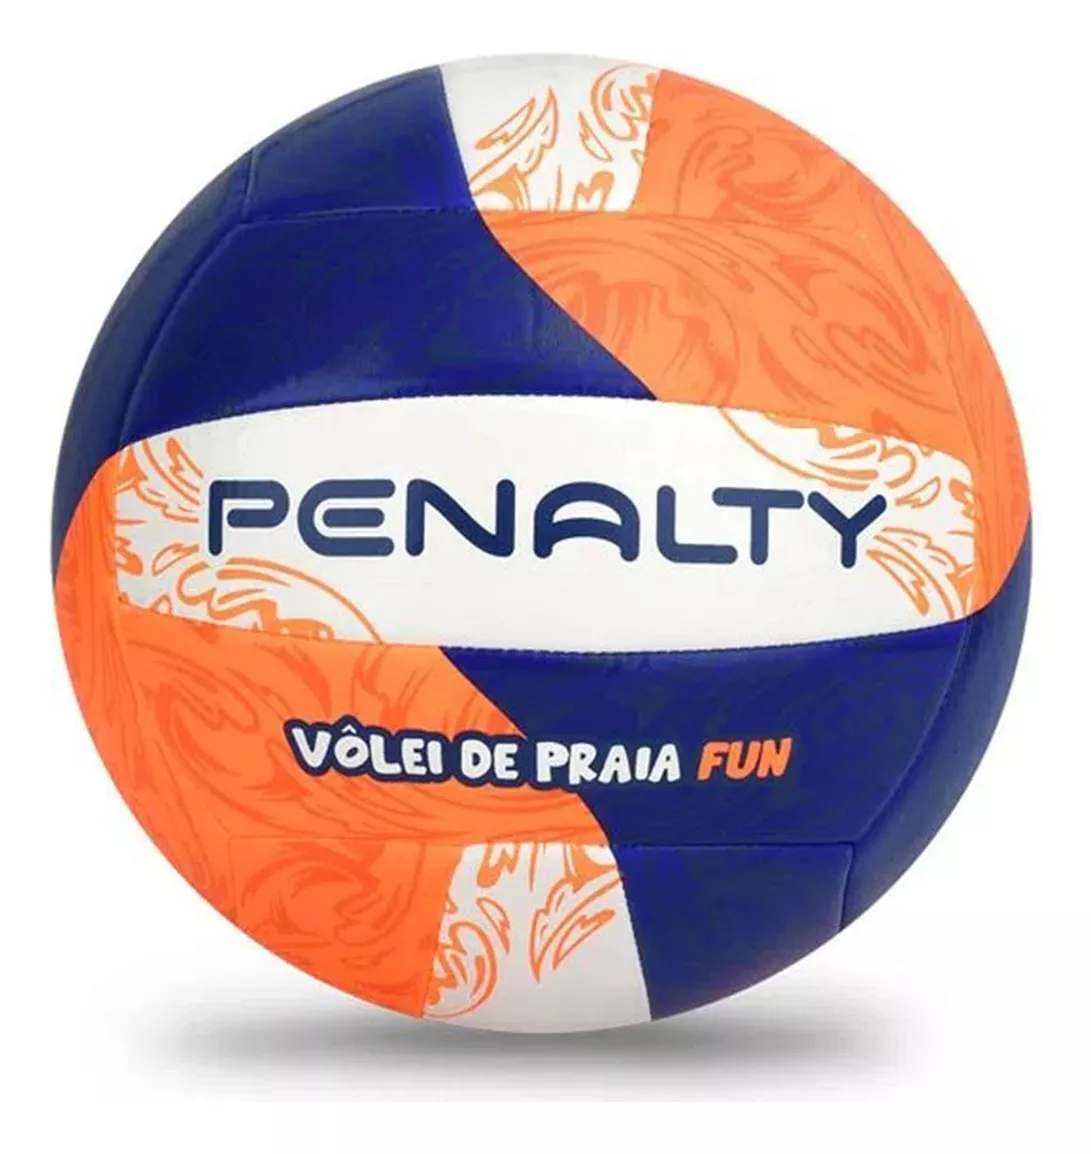 Segunda imagem para pesquisa de bola de volei penalty